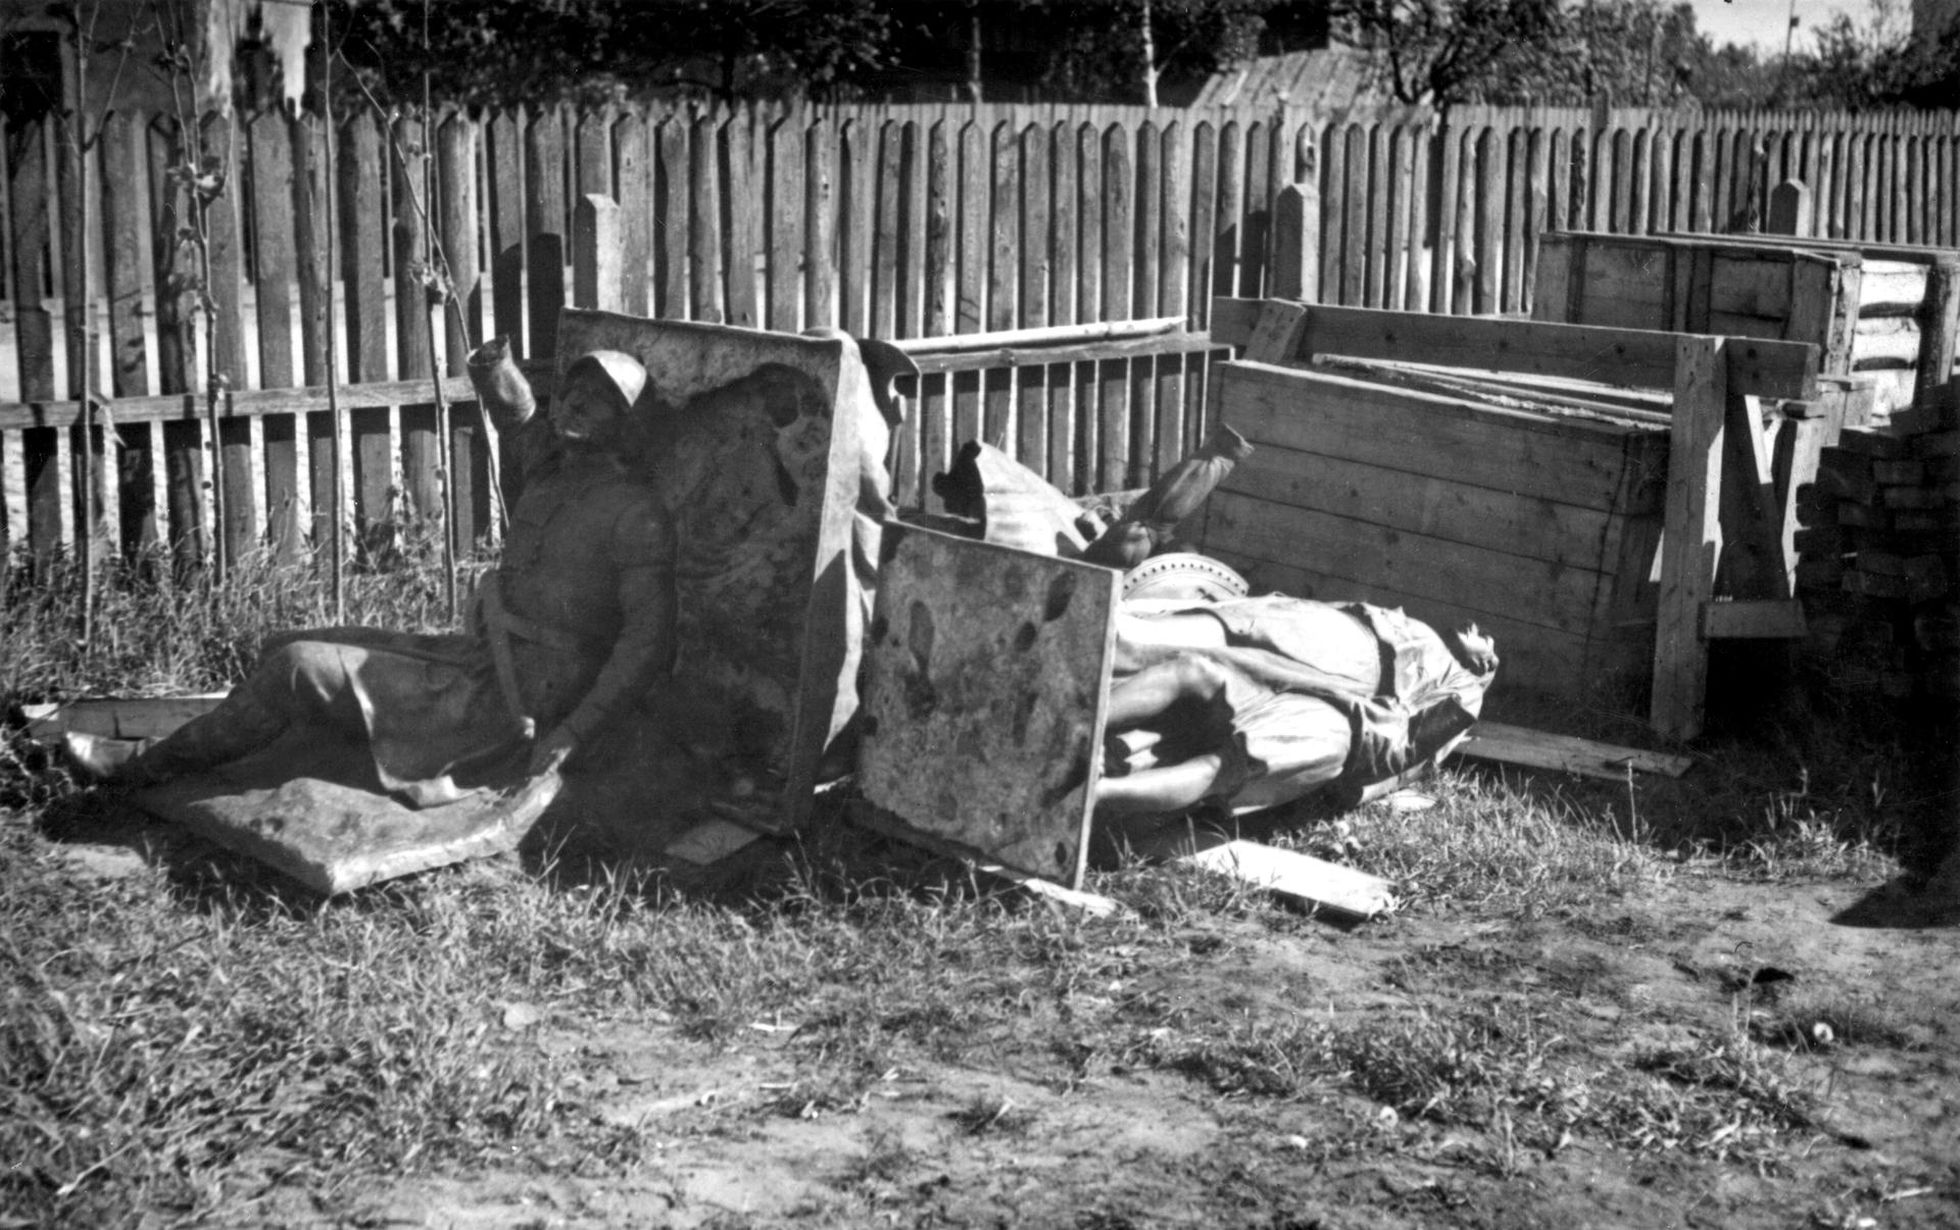 Viljandi Muuseumi fotokogusse jõudnud pilt näitab purustatud Suure-Jaani Lembitu kuju ja Viljandi mälestussamba monumendi skulptuure vedelemas koos ühe aia ääres. Foto tegemise koht ja aega on teadmata, kuid tõenäoliselt on kohaks Põllumeeste Seltsi Kaubandusosakonna tagaõu ja aastaks 1941.